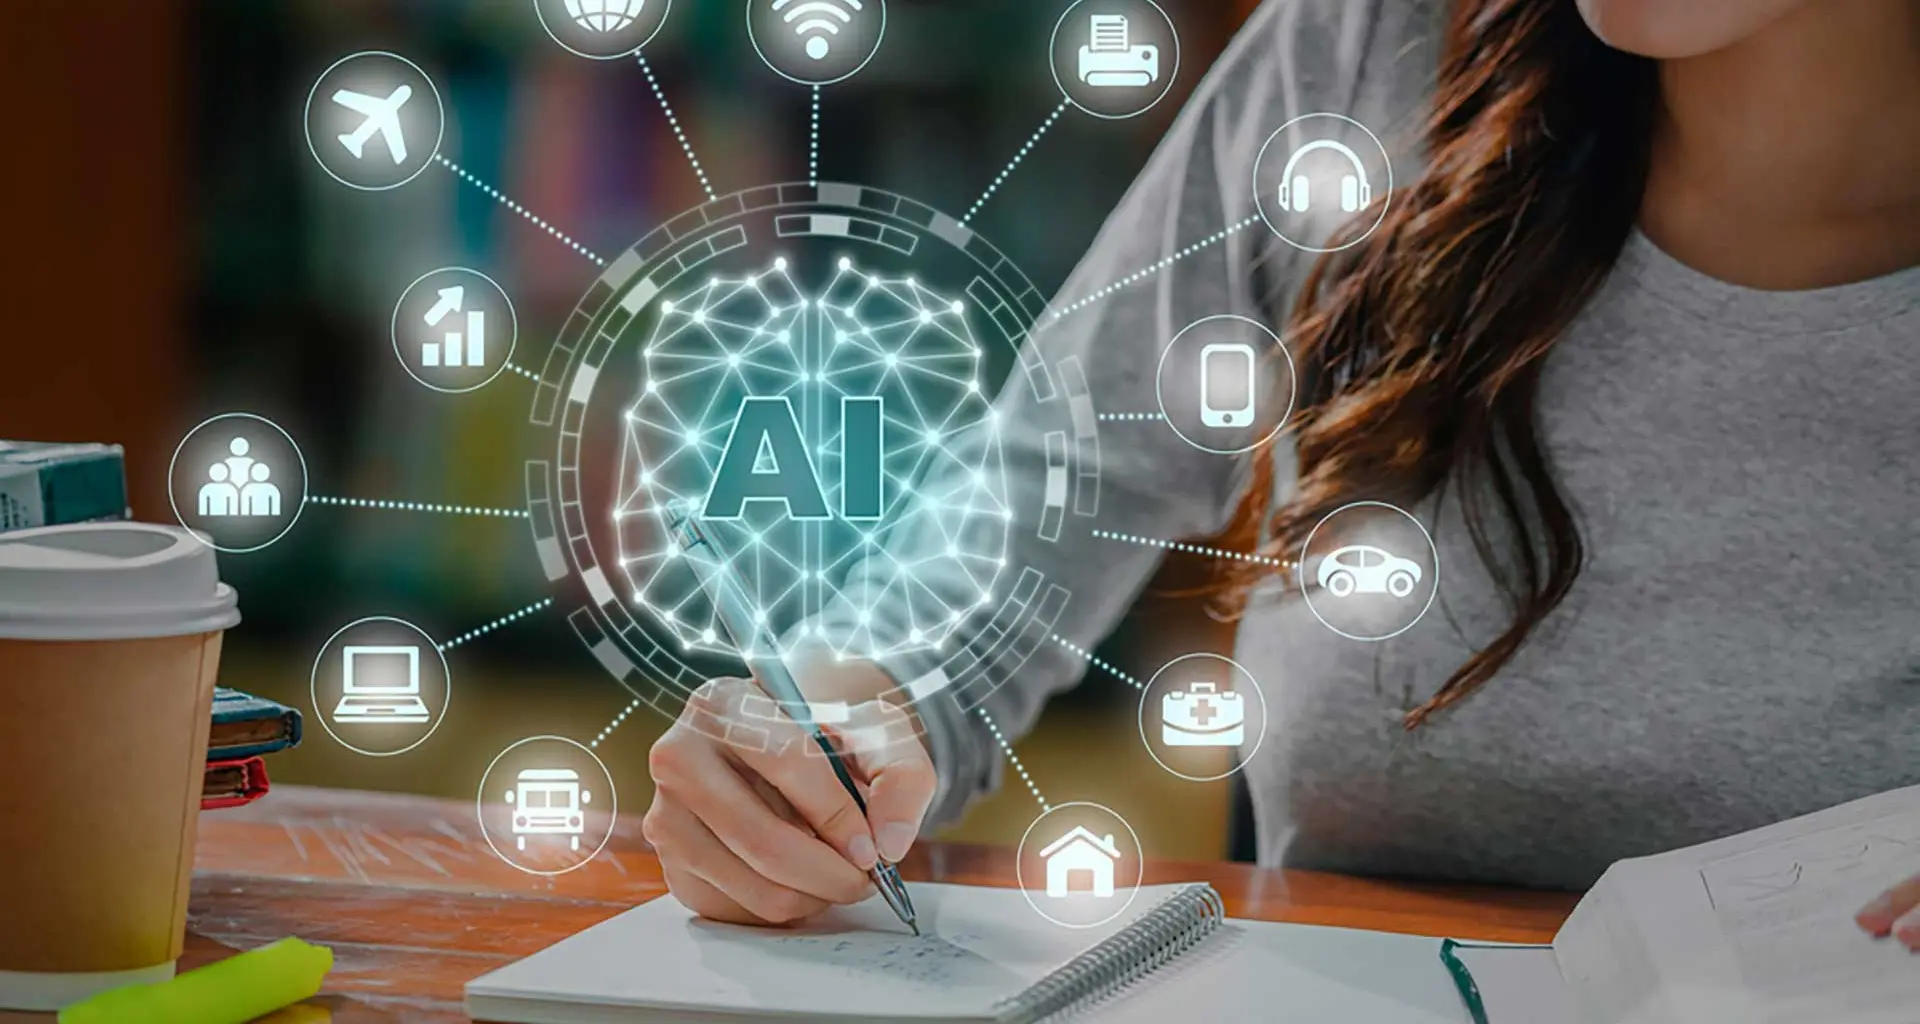 proyecto de clases con inteligencia artificial - Qué tipo de tareas o actividades educativas pueden ser mejoradas a través de la IA